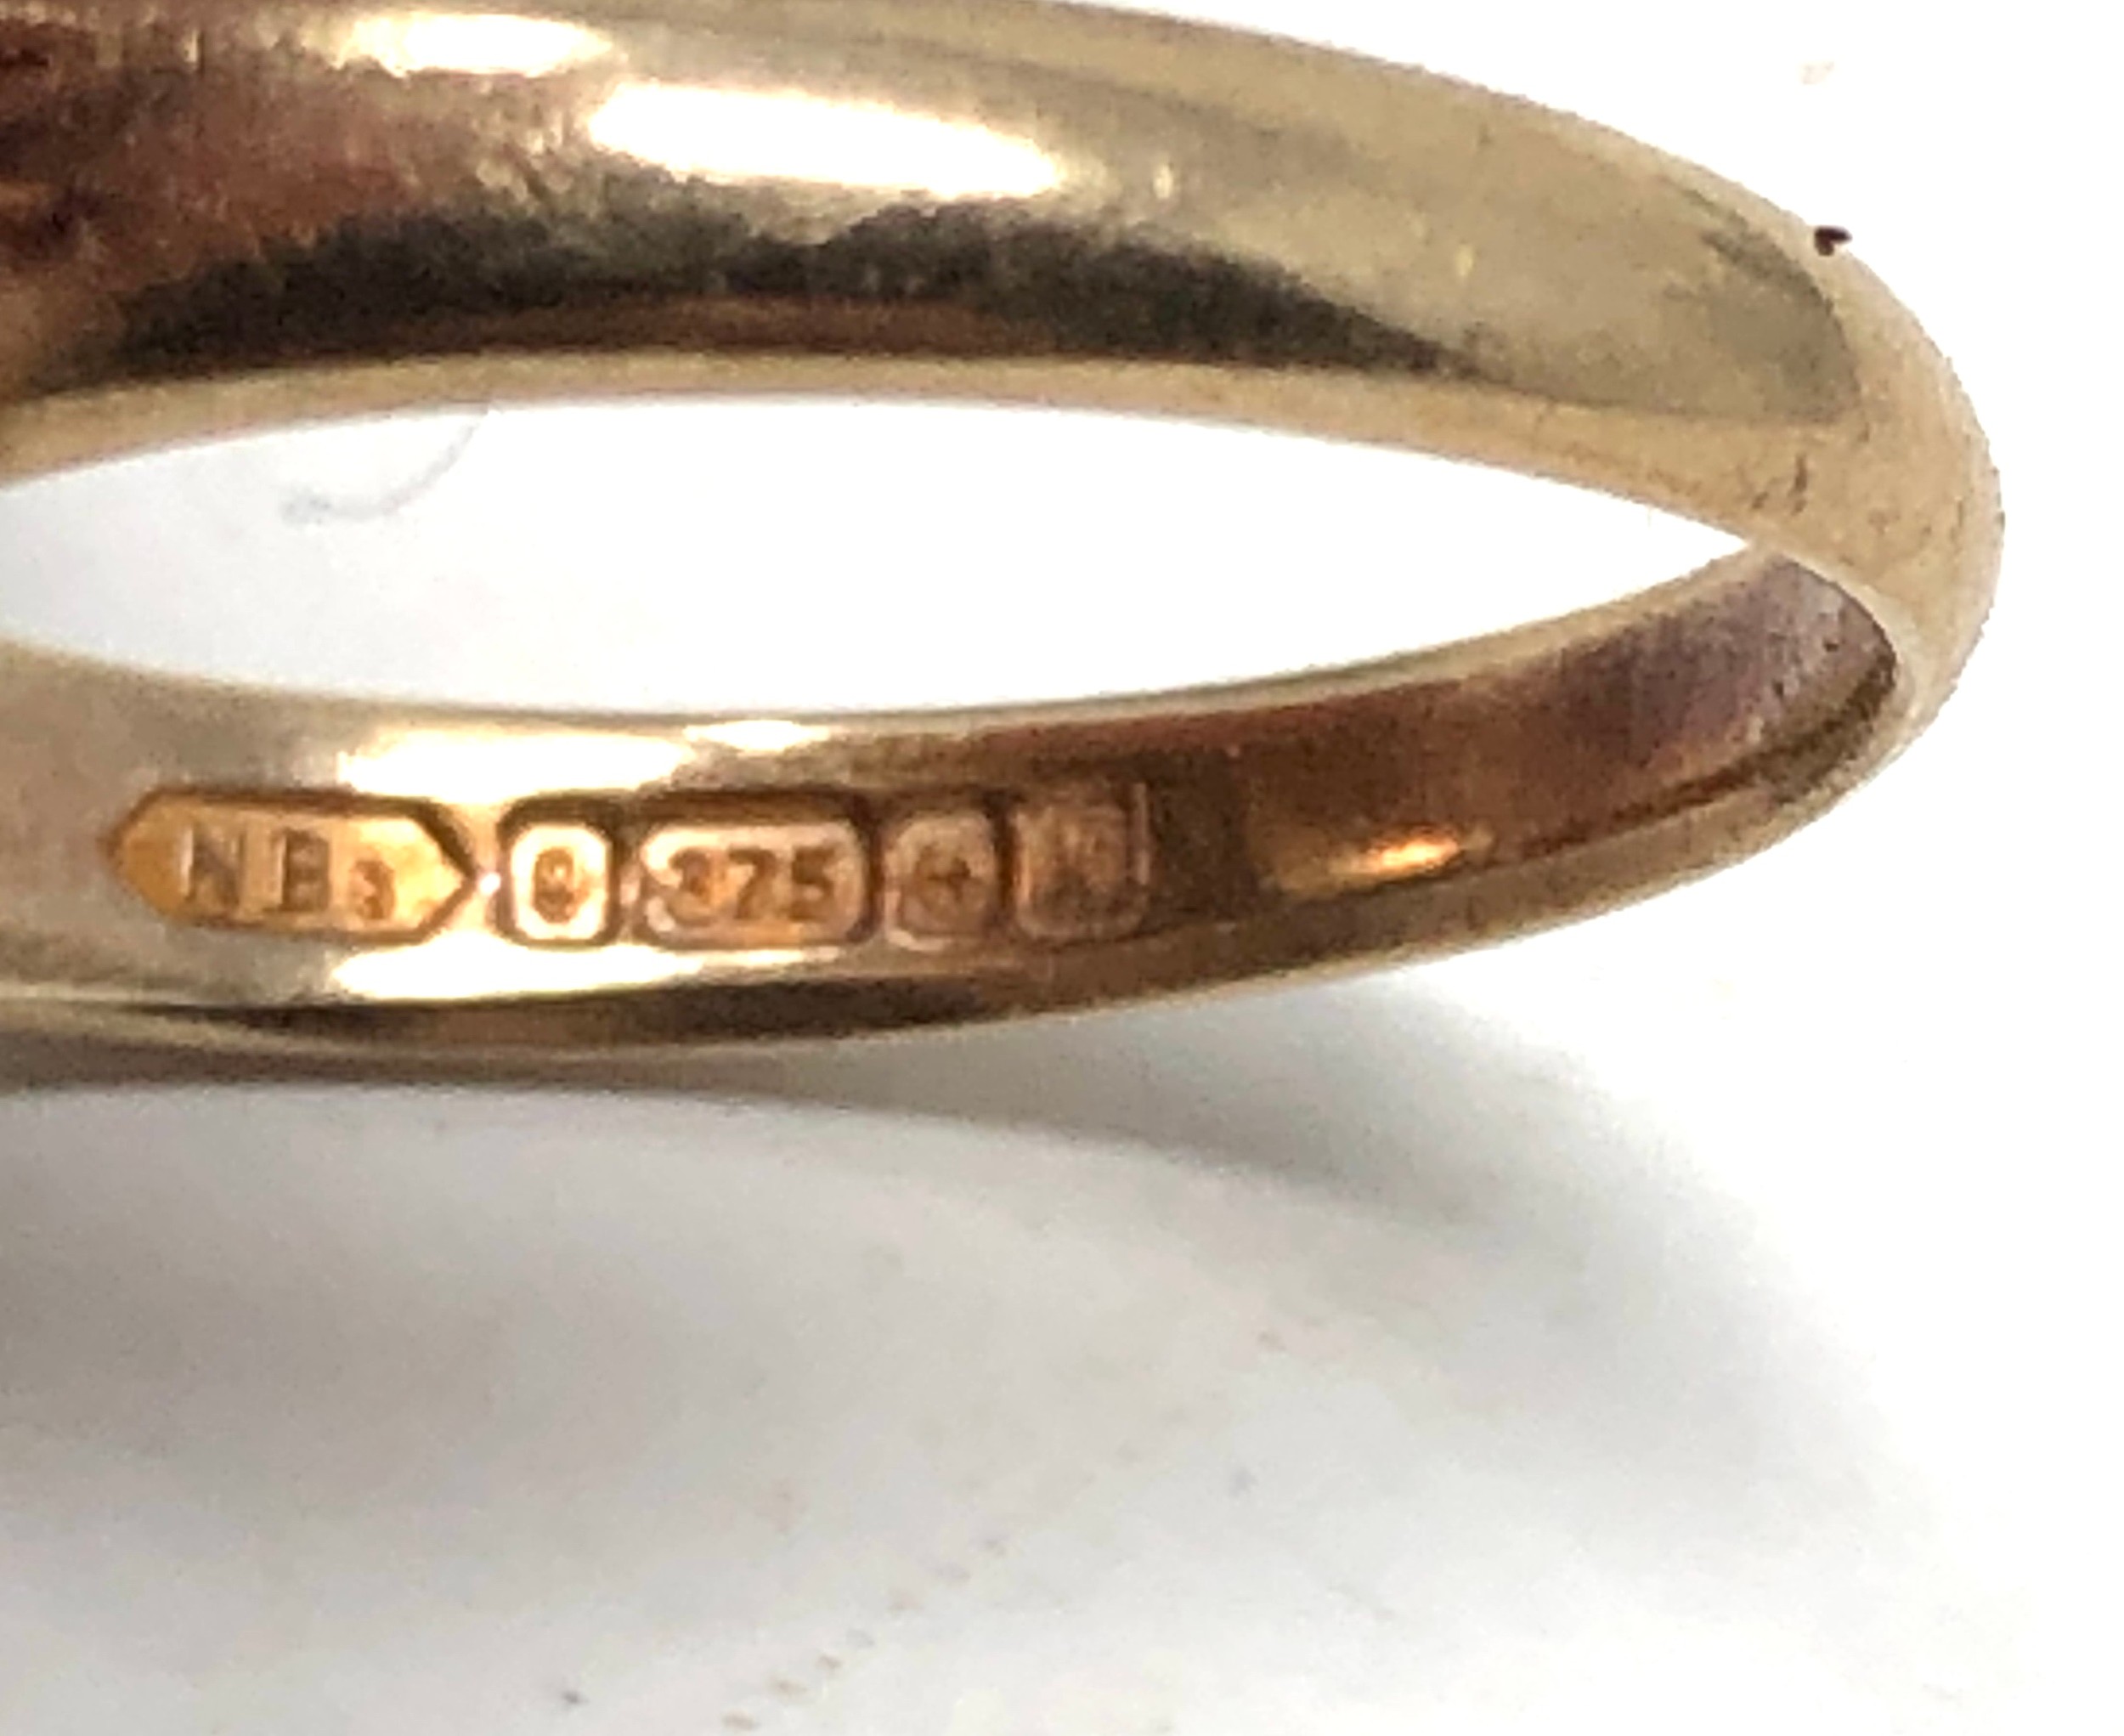 Vintage 9ct gold garnet ring birmingham gold hallmarks weight 3.8g - Image 5 of 5